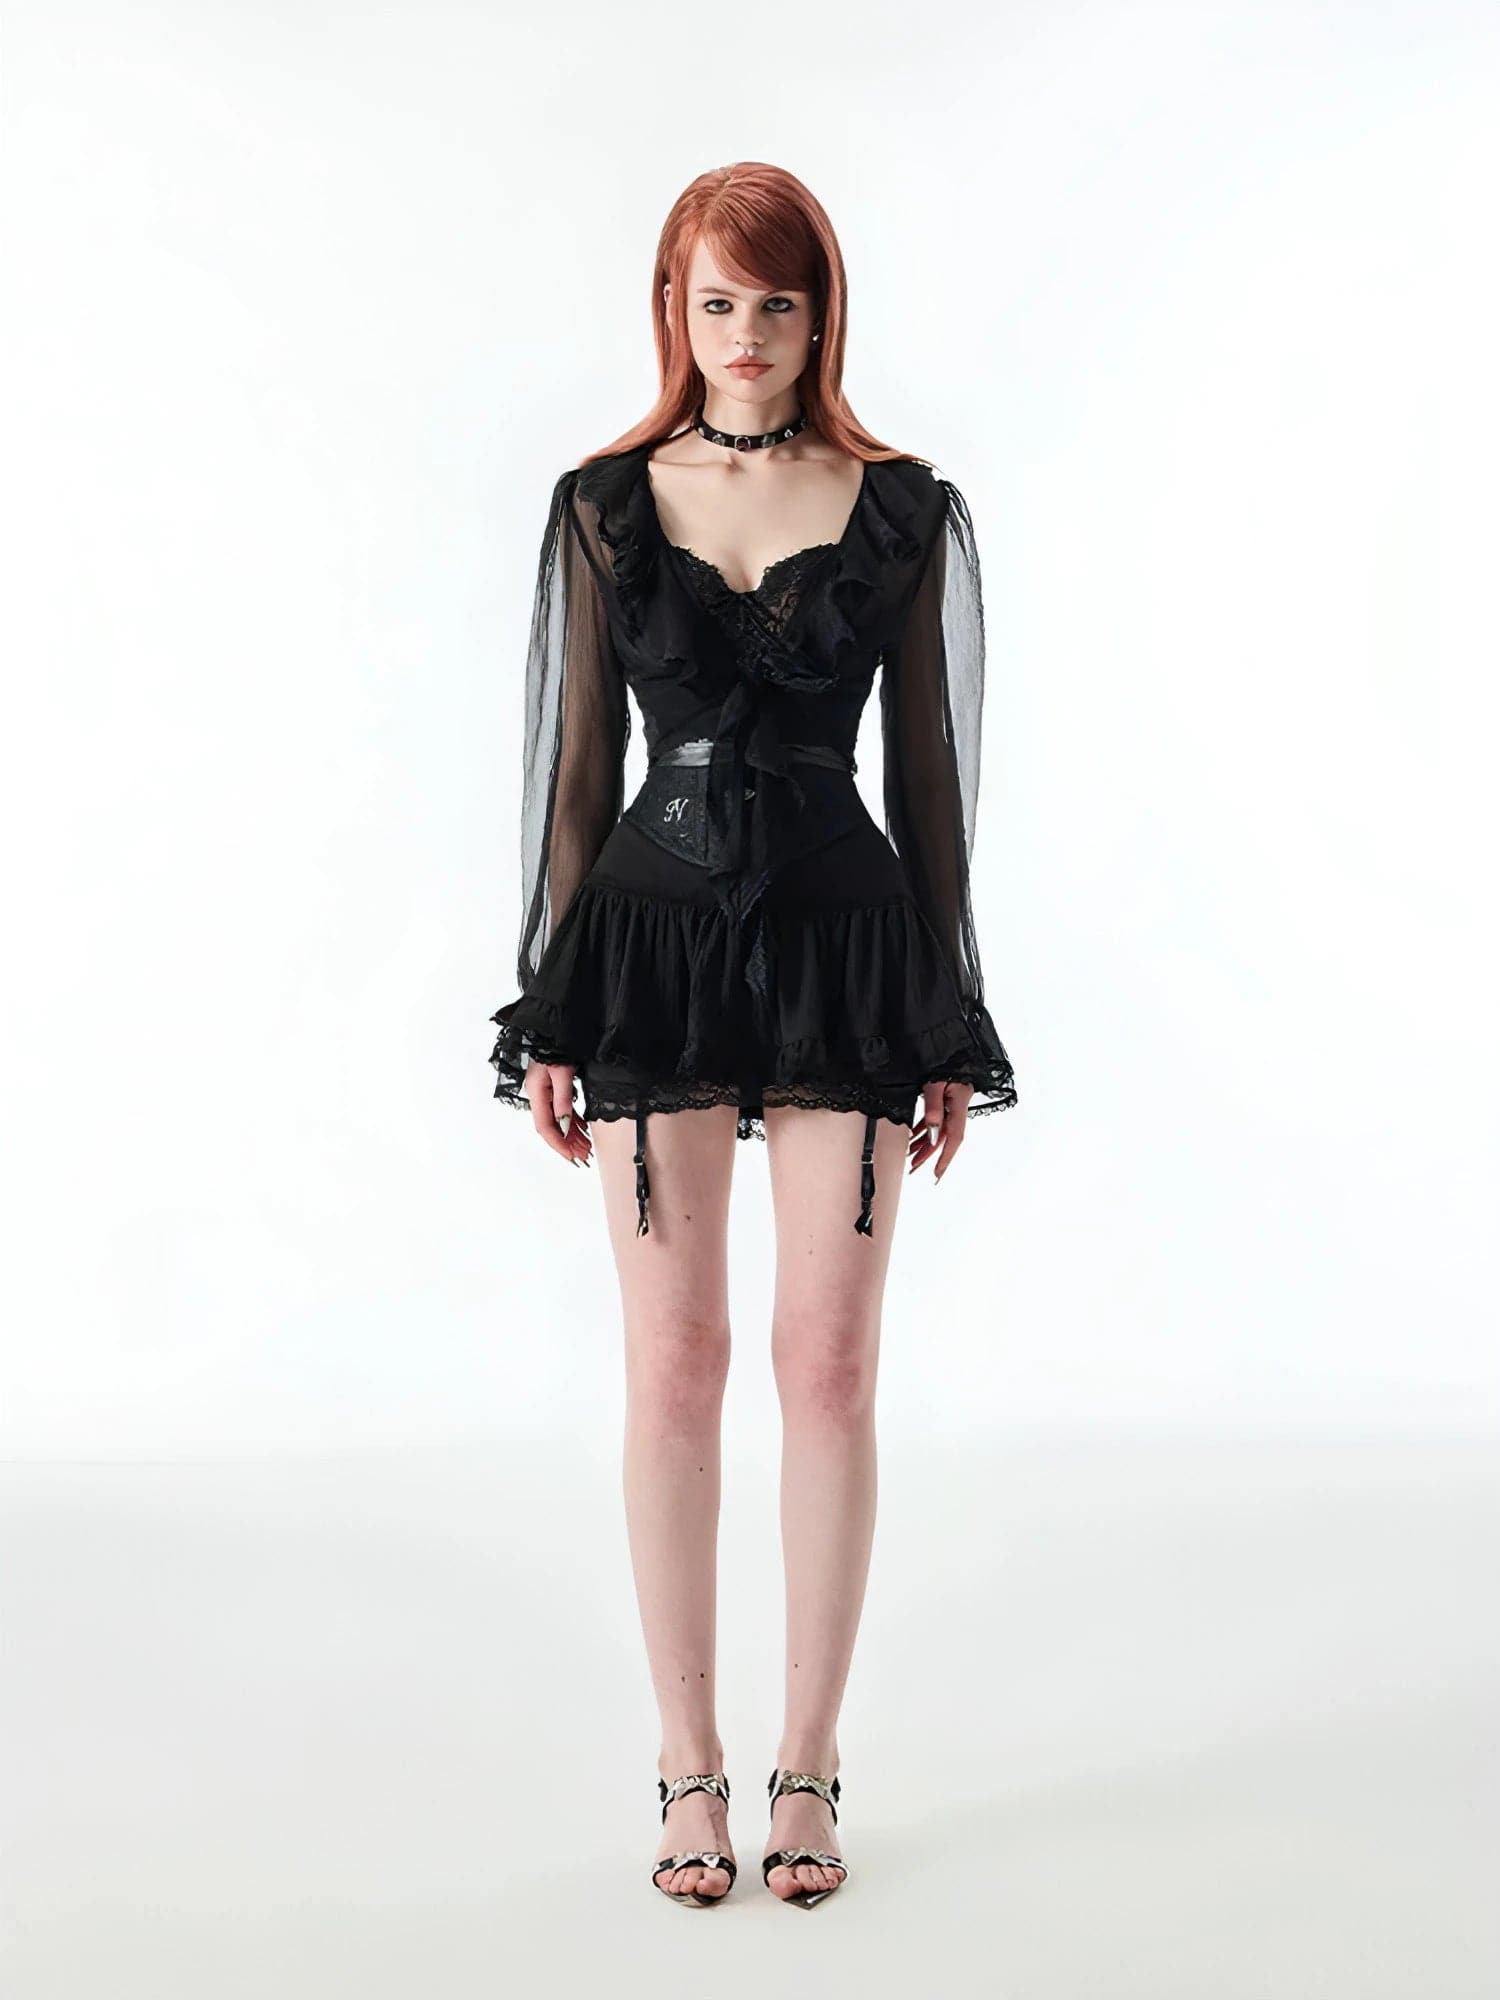 1Jinn White & Black Lace Edge Mini Skirt - chiclara